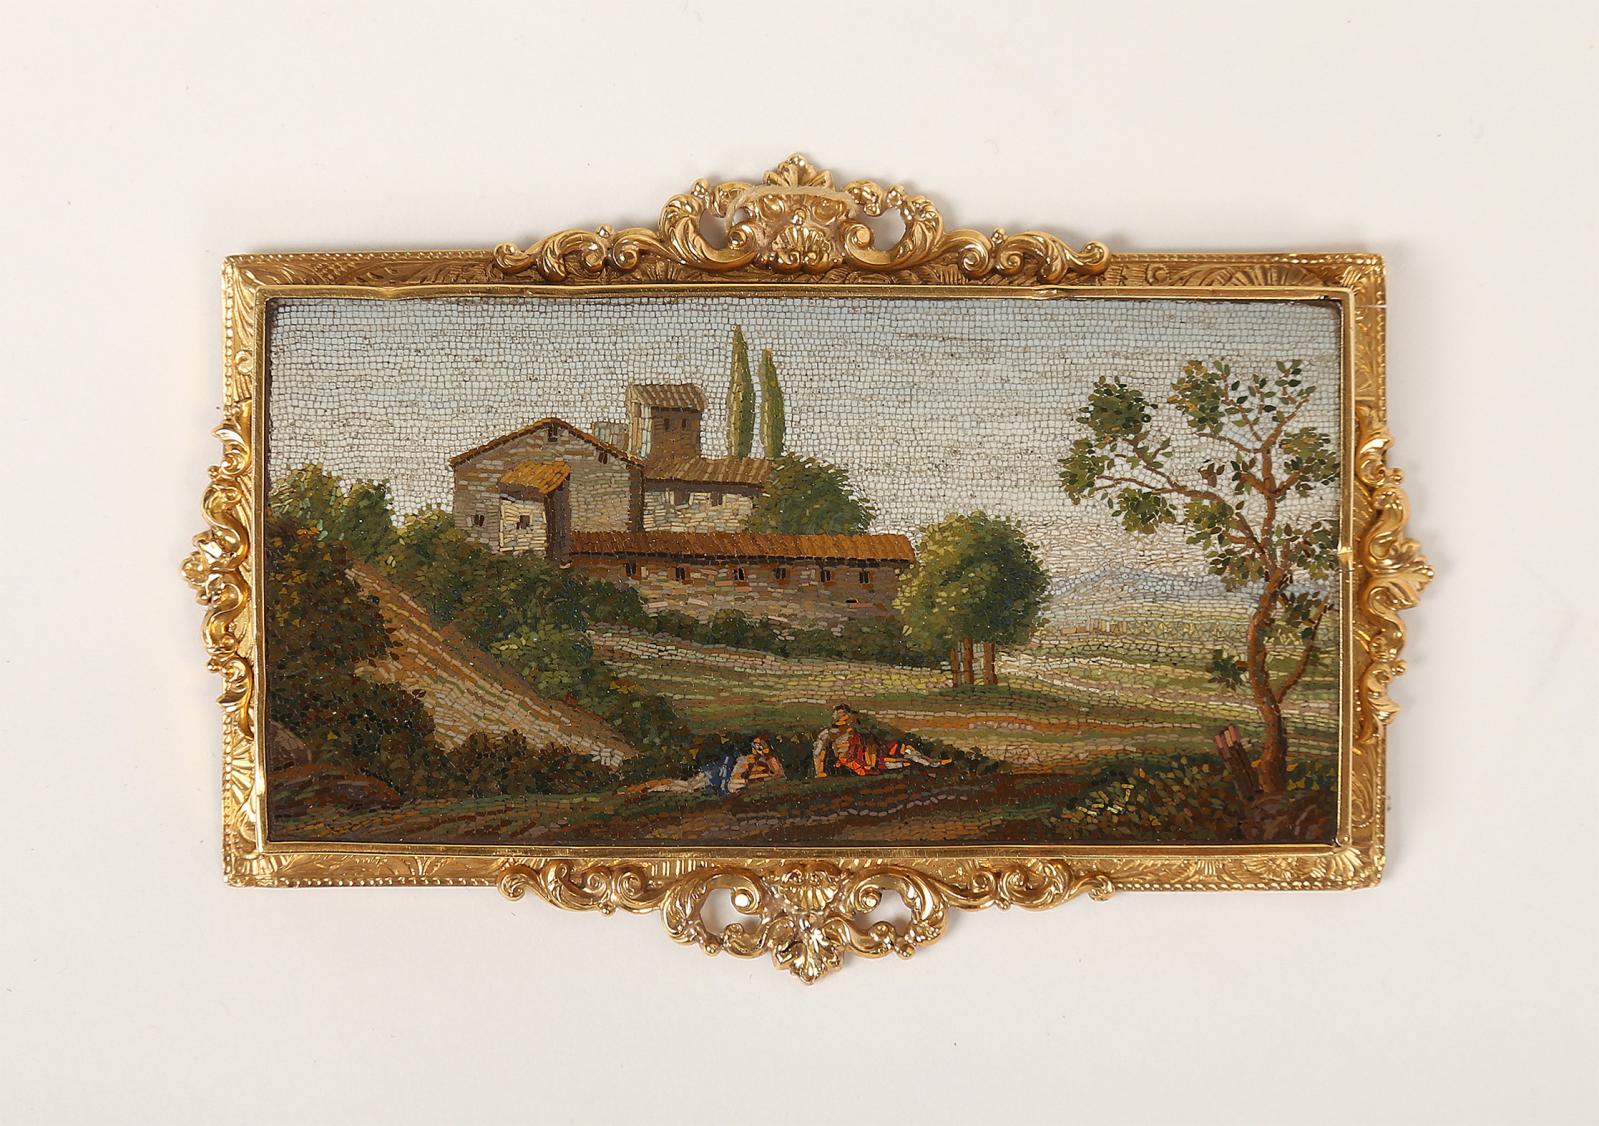 8 500 €Italie, Ier quart du XIXe siècle, broche en micromosaïque, monture sur plaque d’écaille et métal précieux, Paysage animé des environs de Rome, 